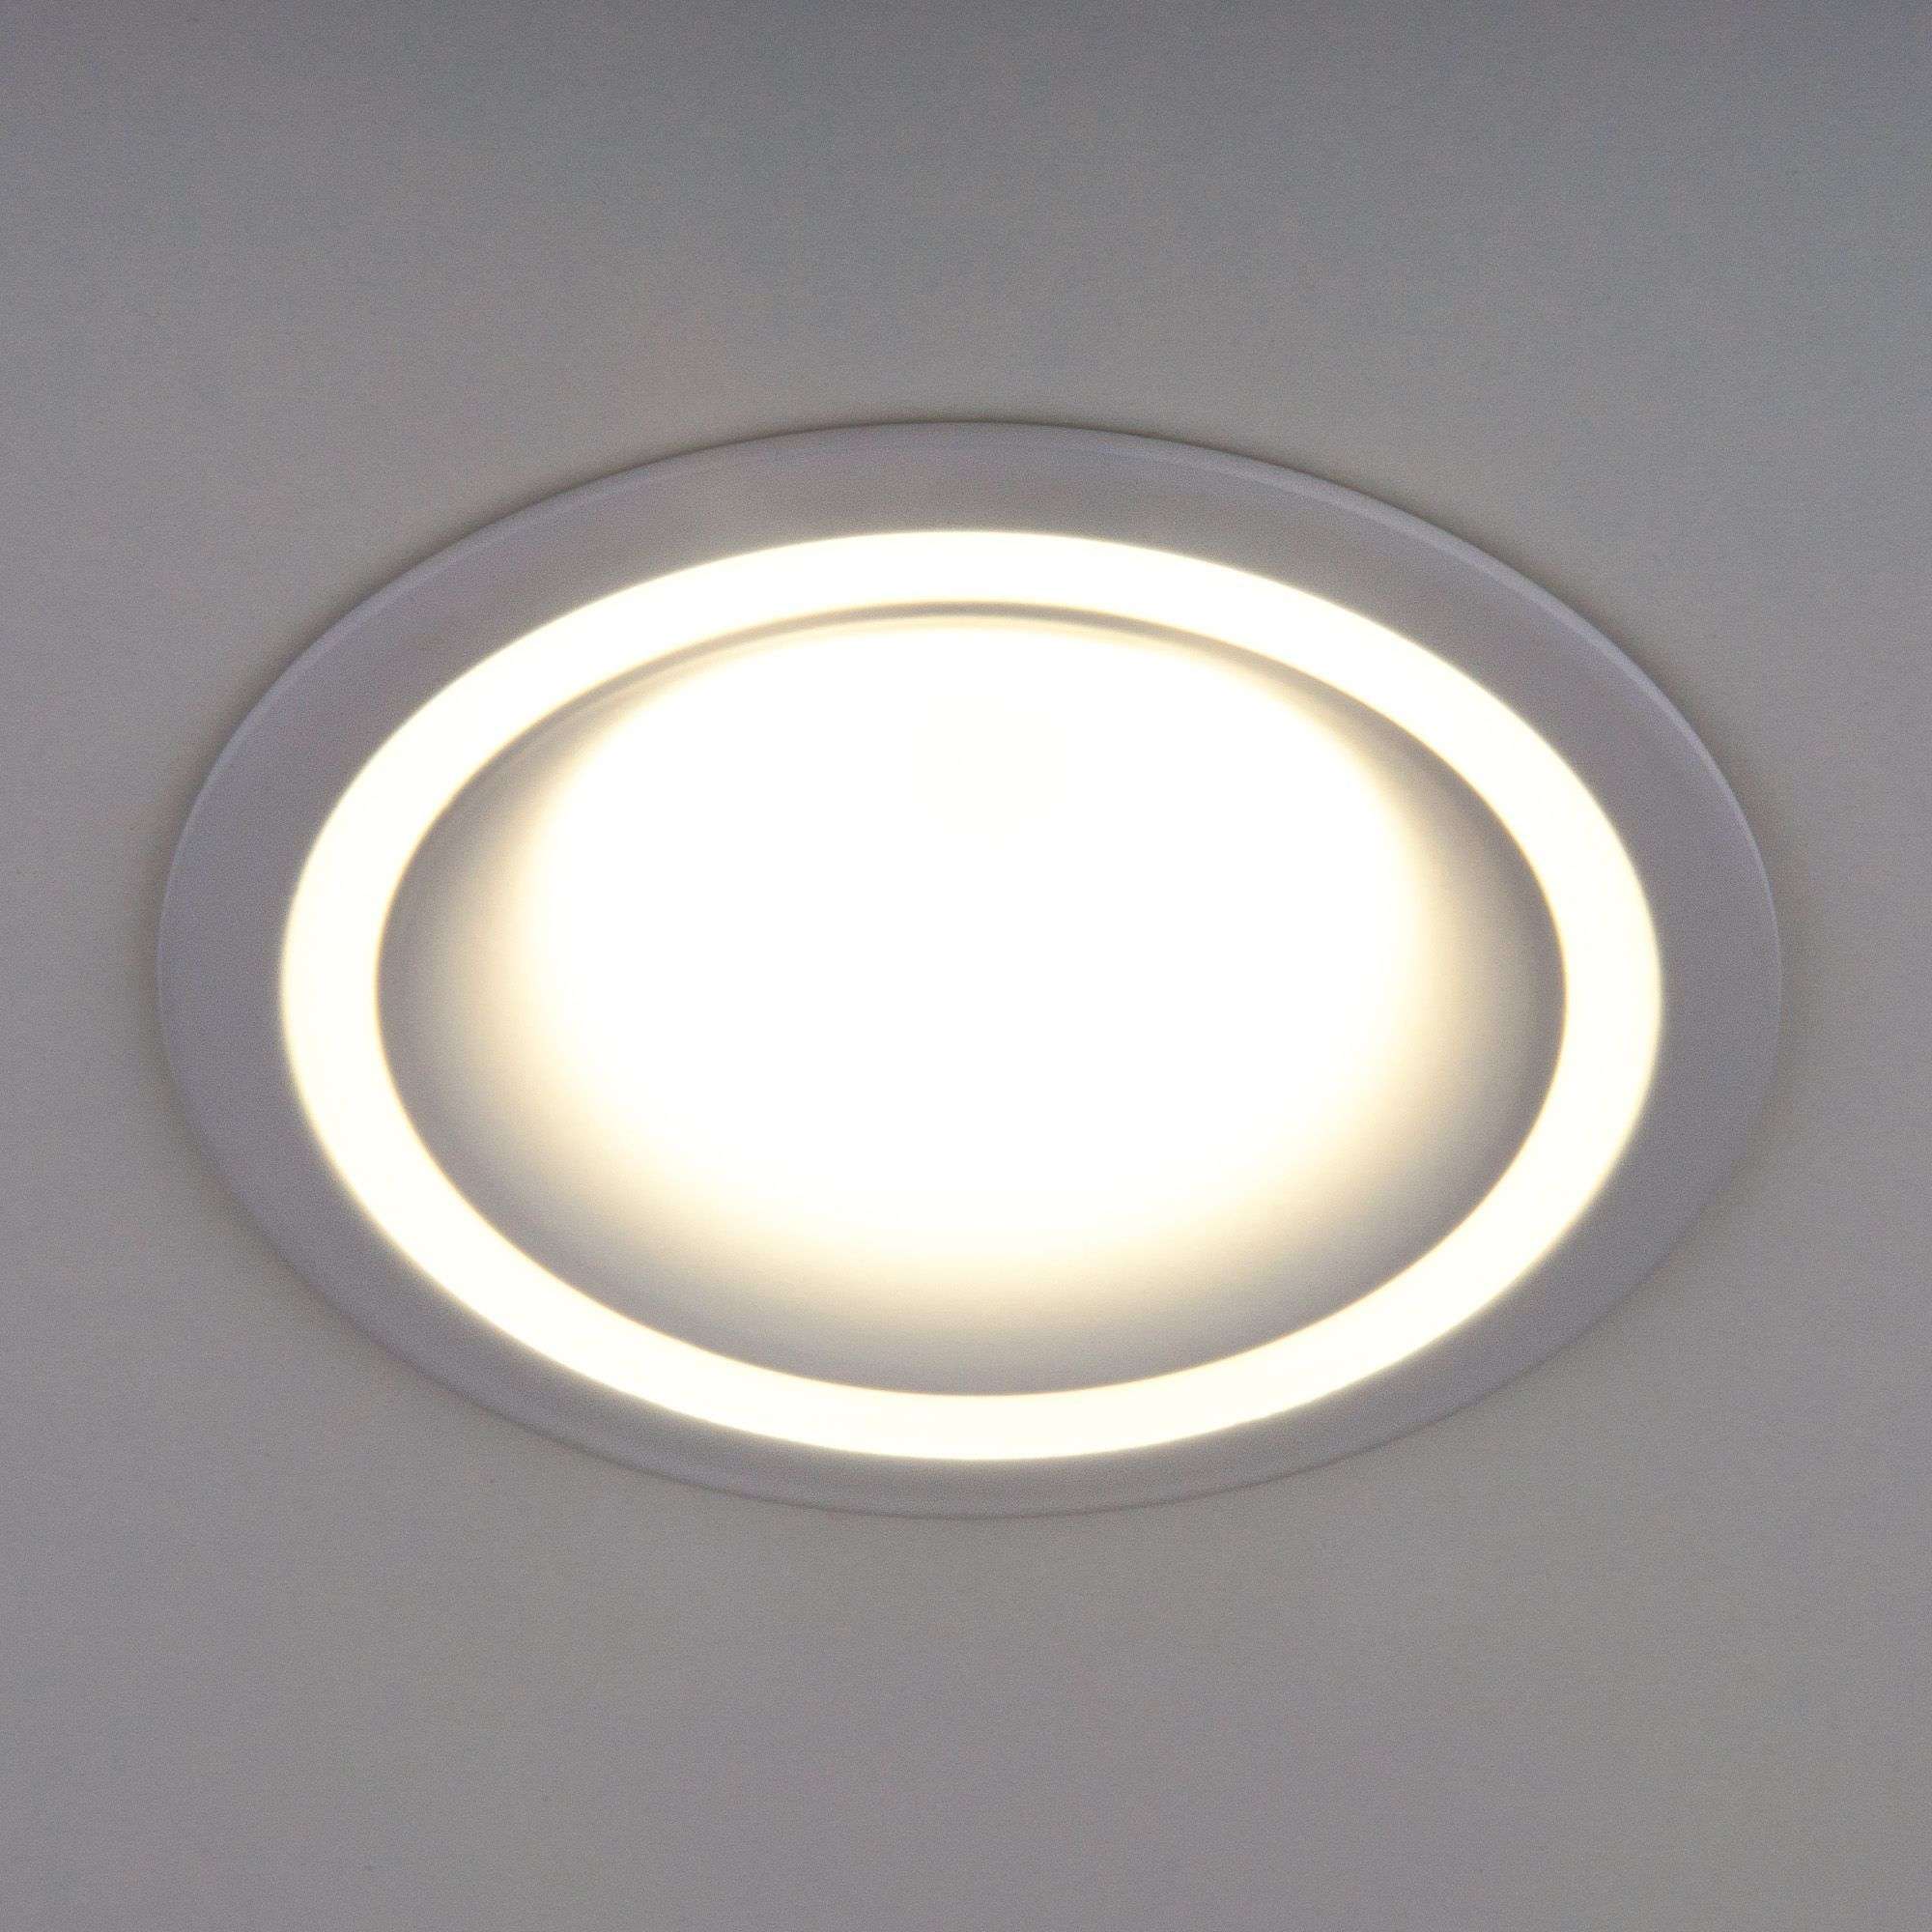 Встраиваемый точечный светильник 7012 MR16 WH белый. Фото 2